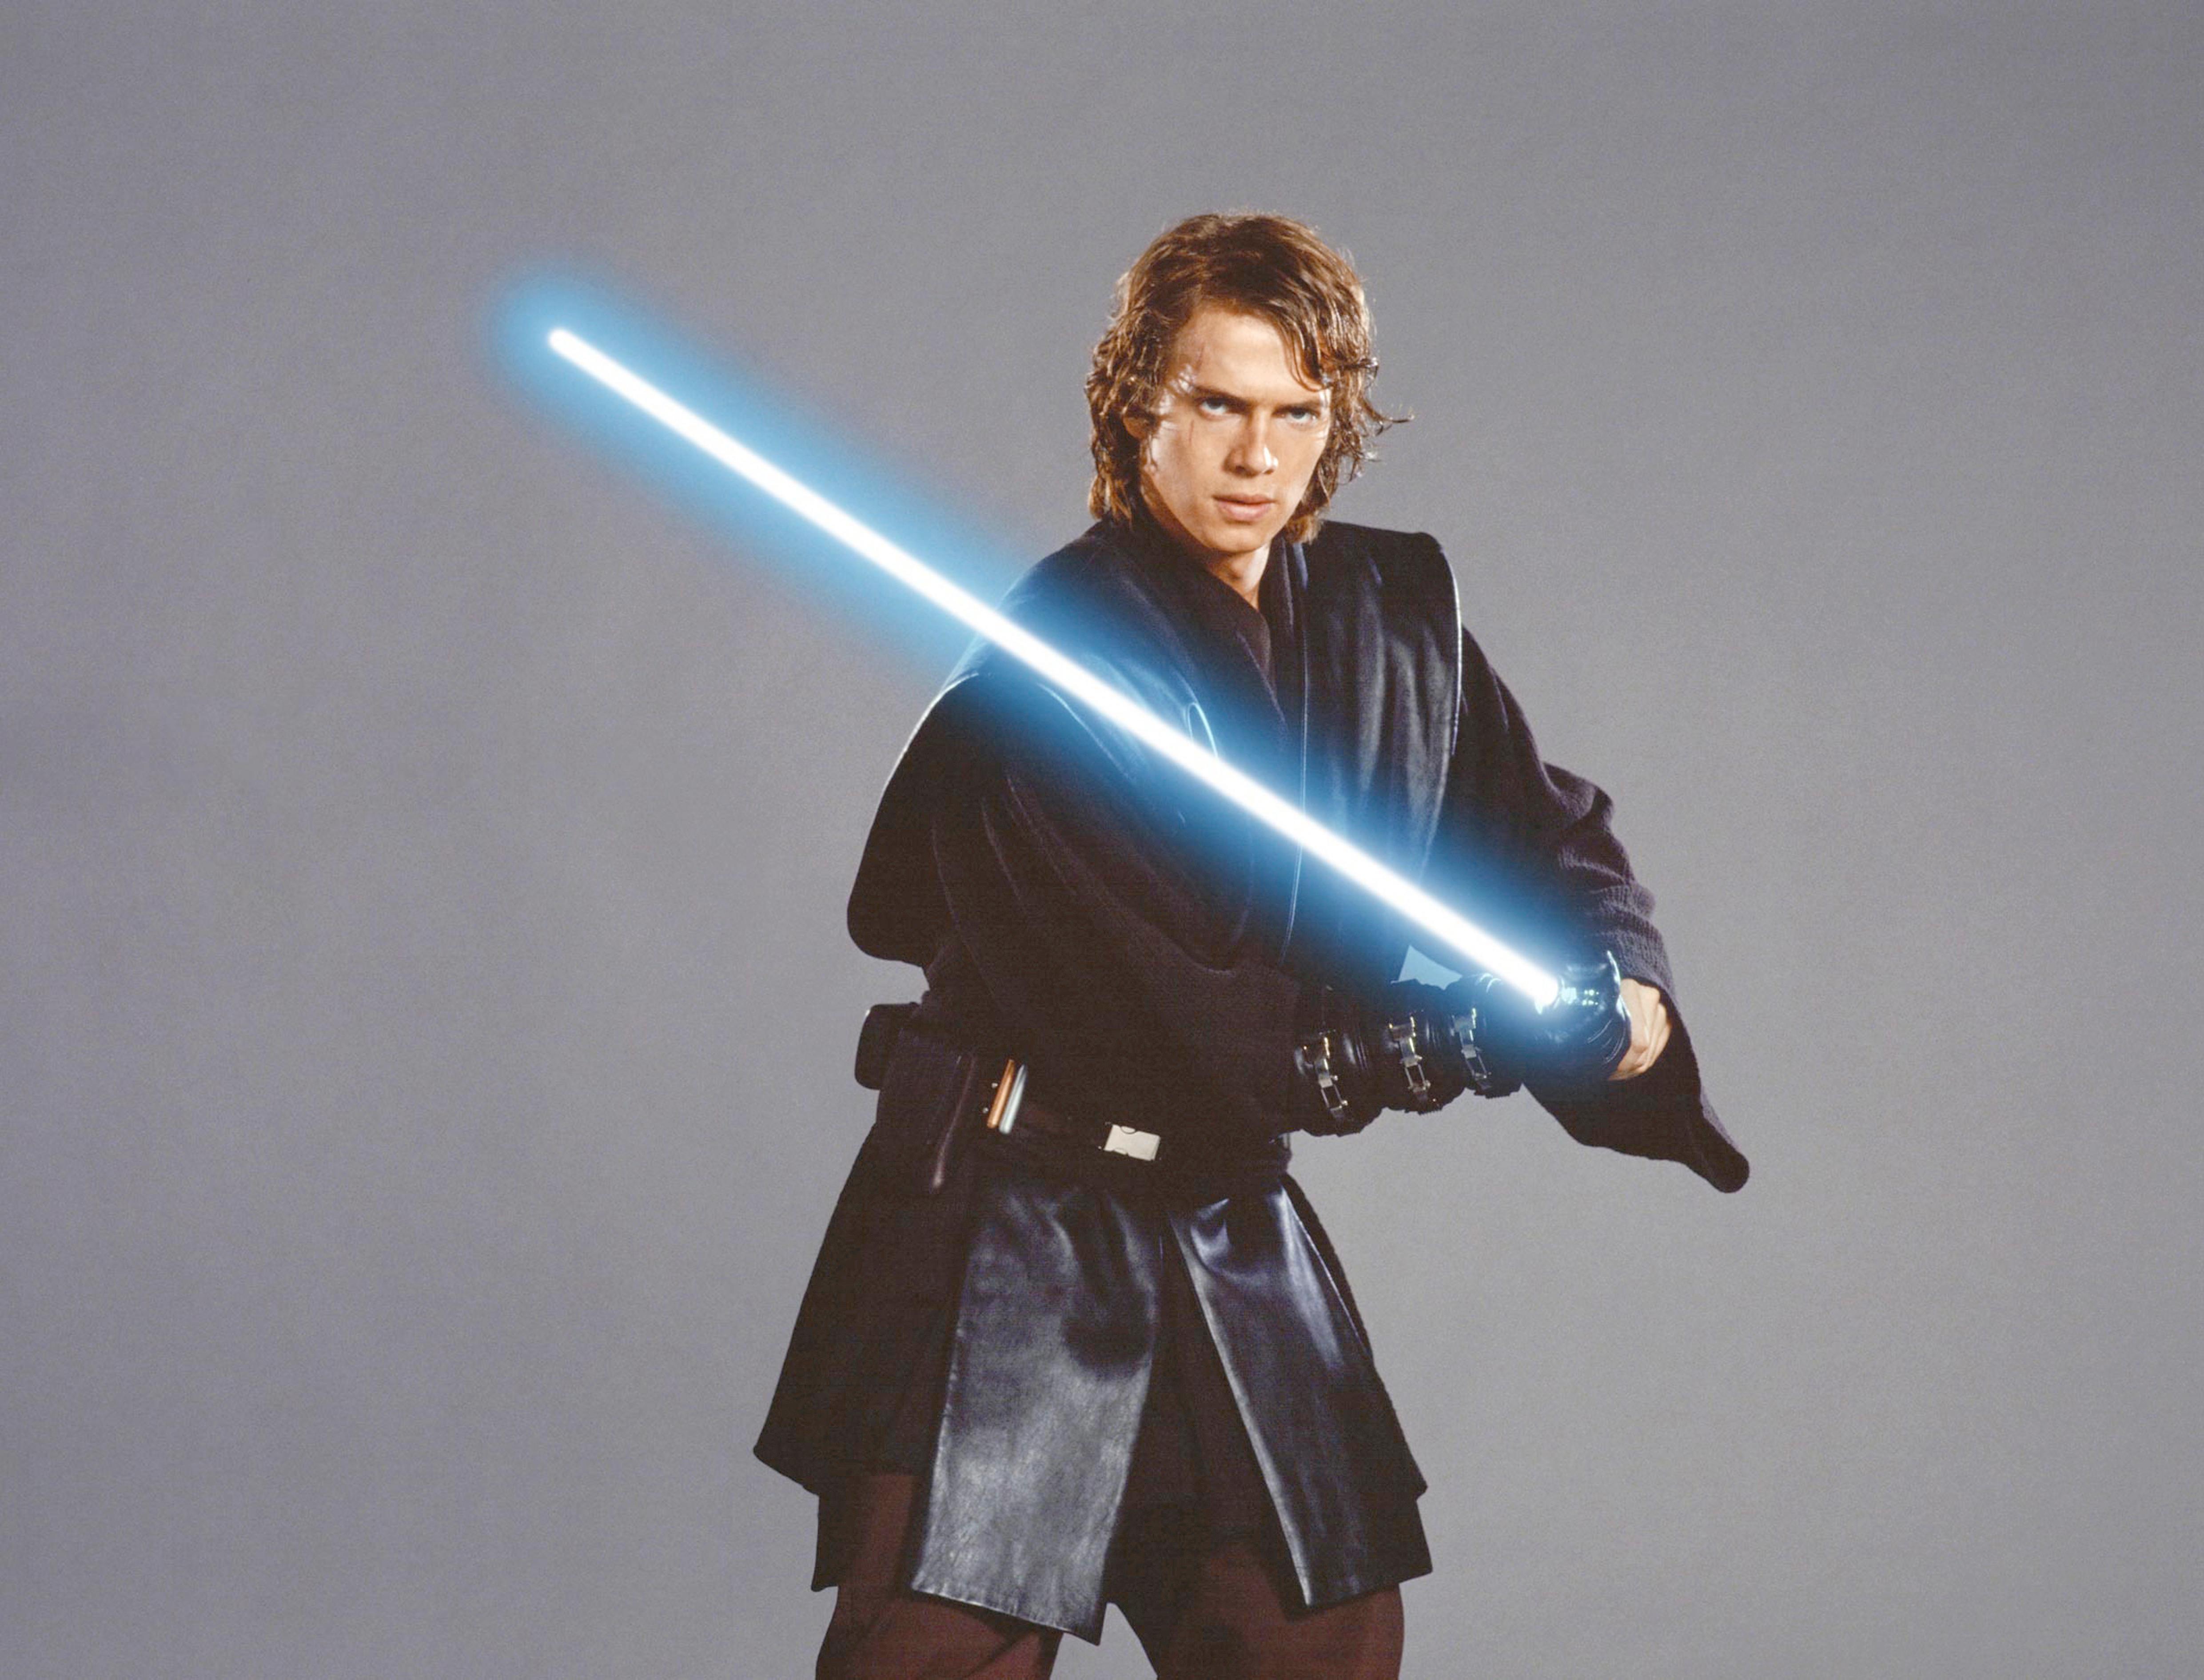 Hayden played Anakin Skywalker